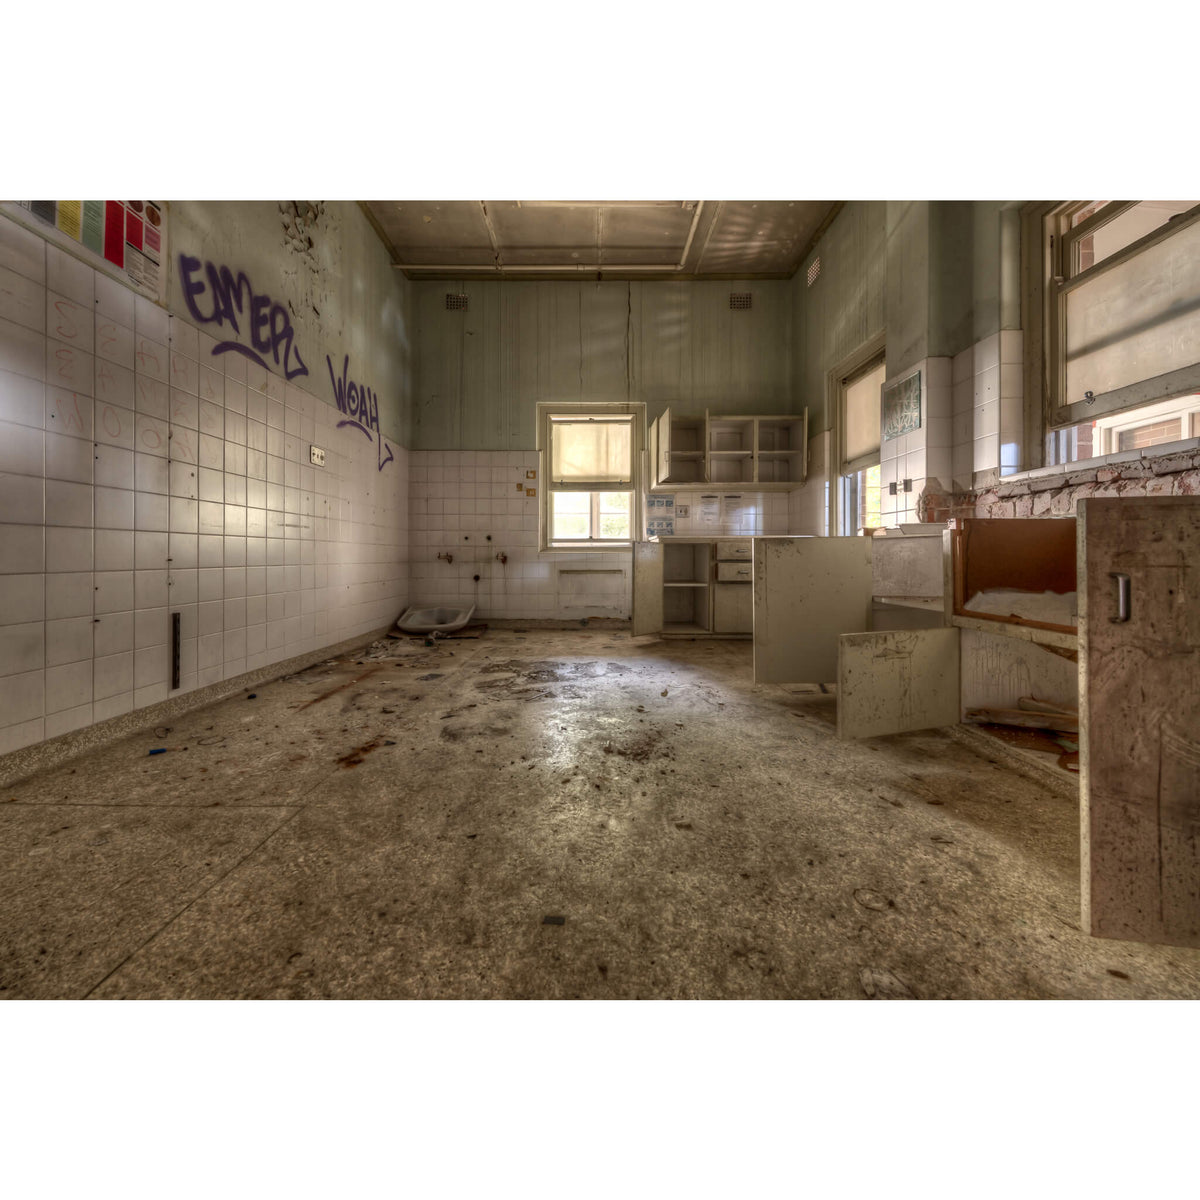 Nothing Left | Waterfall Sanatorium